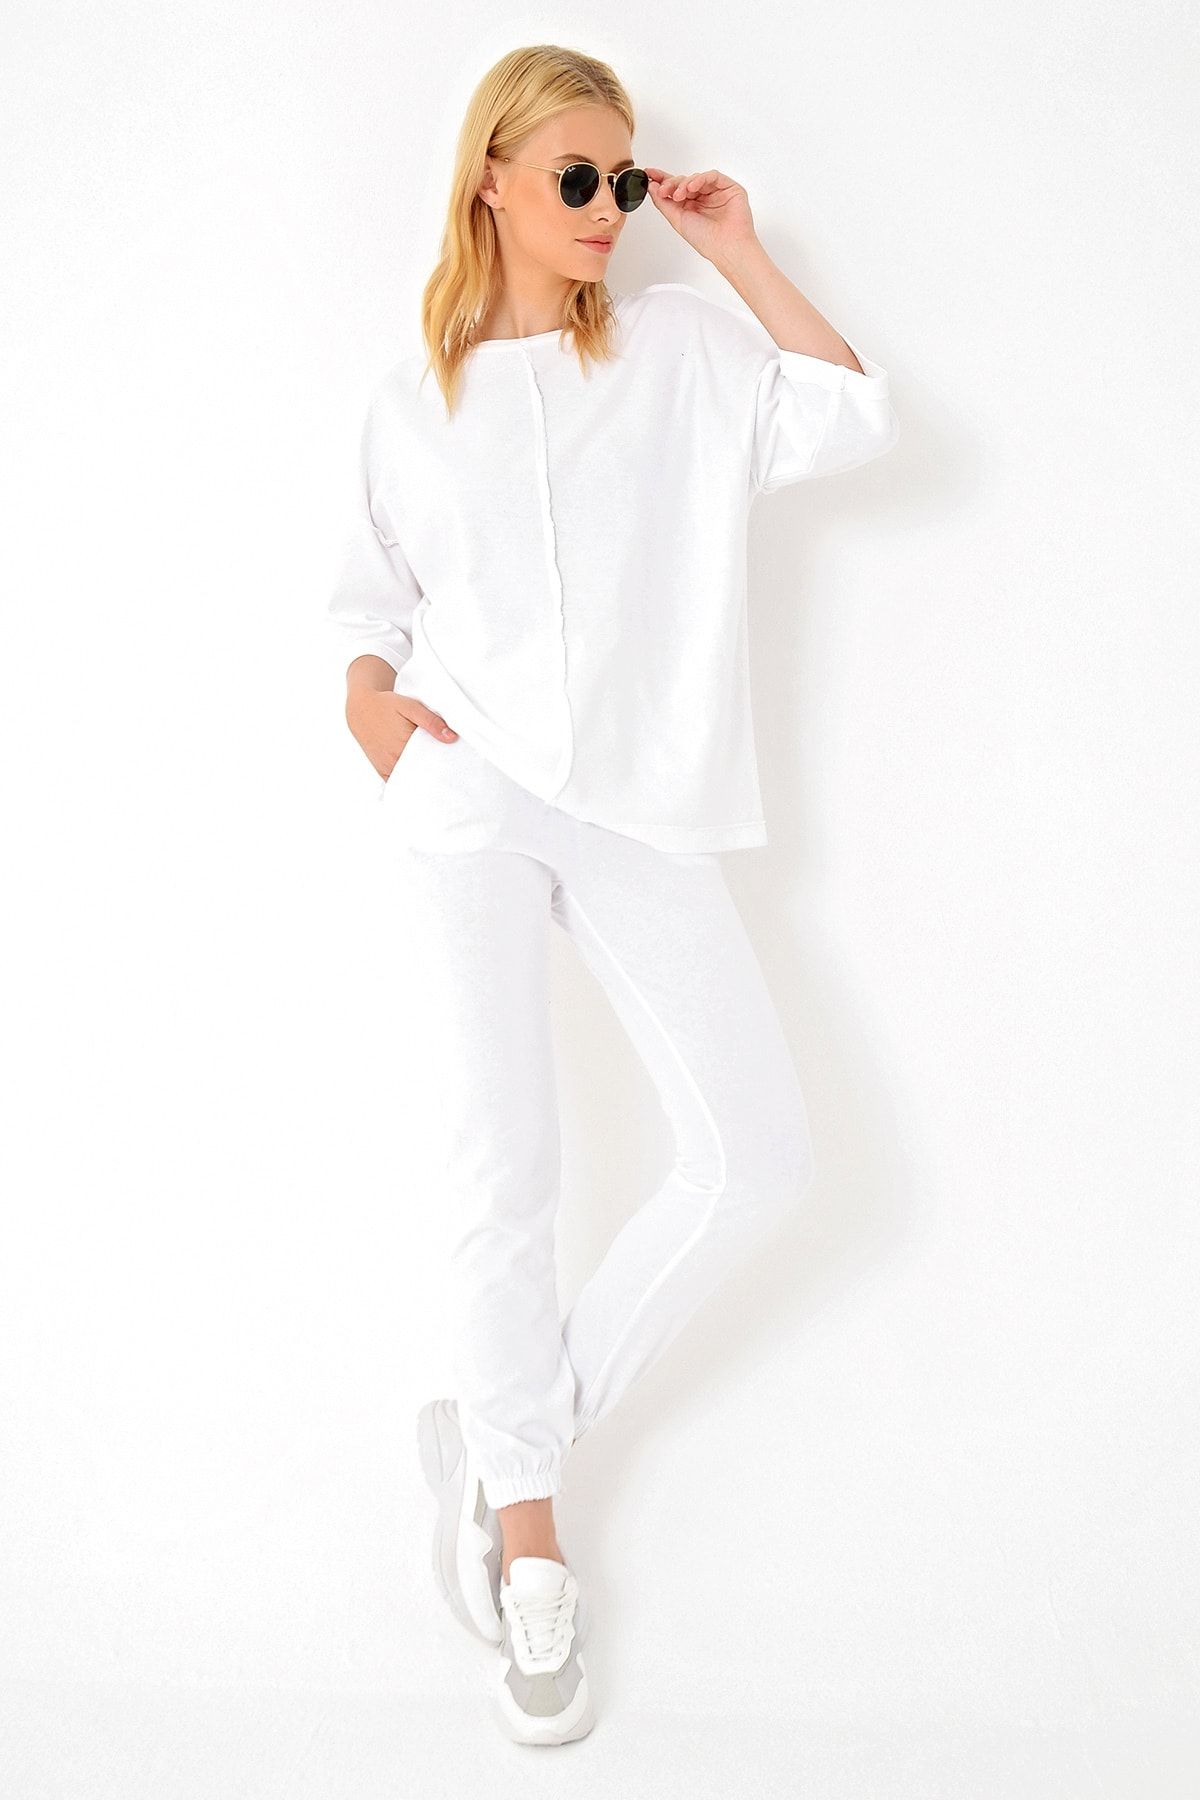 Trend Alaçatı Stili Kadın Beyaz Önü Dikişli Eşofman Takımı ALC-X4926